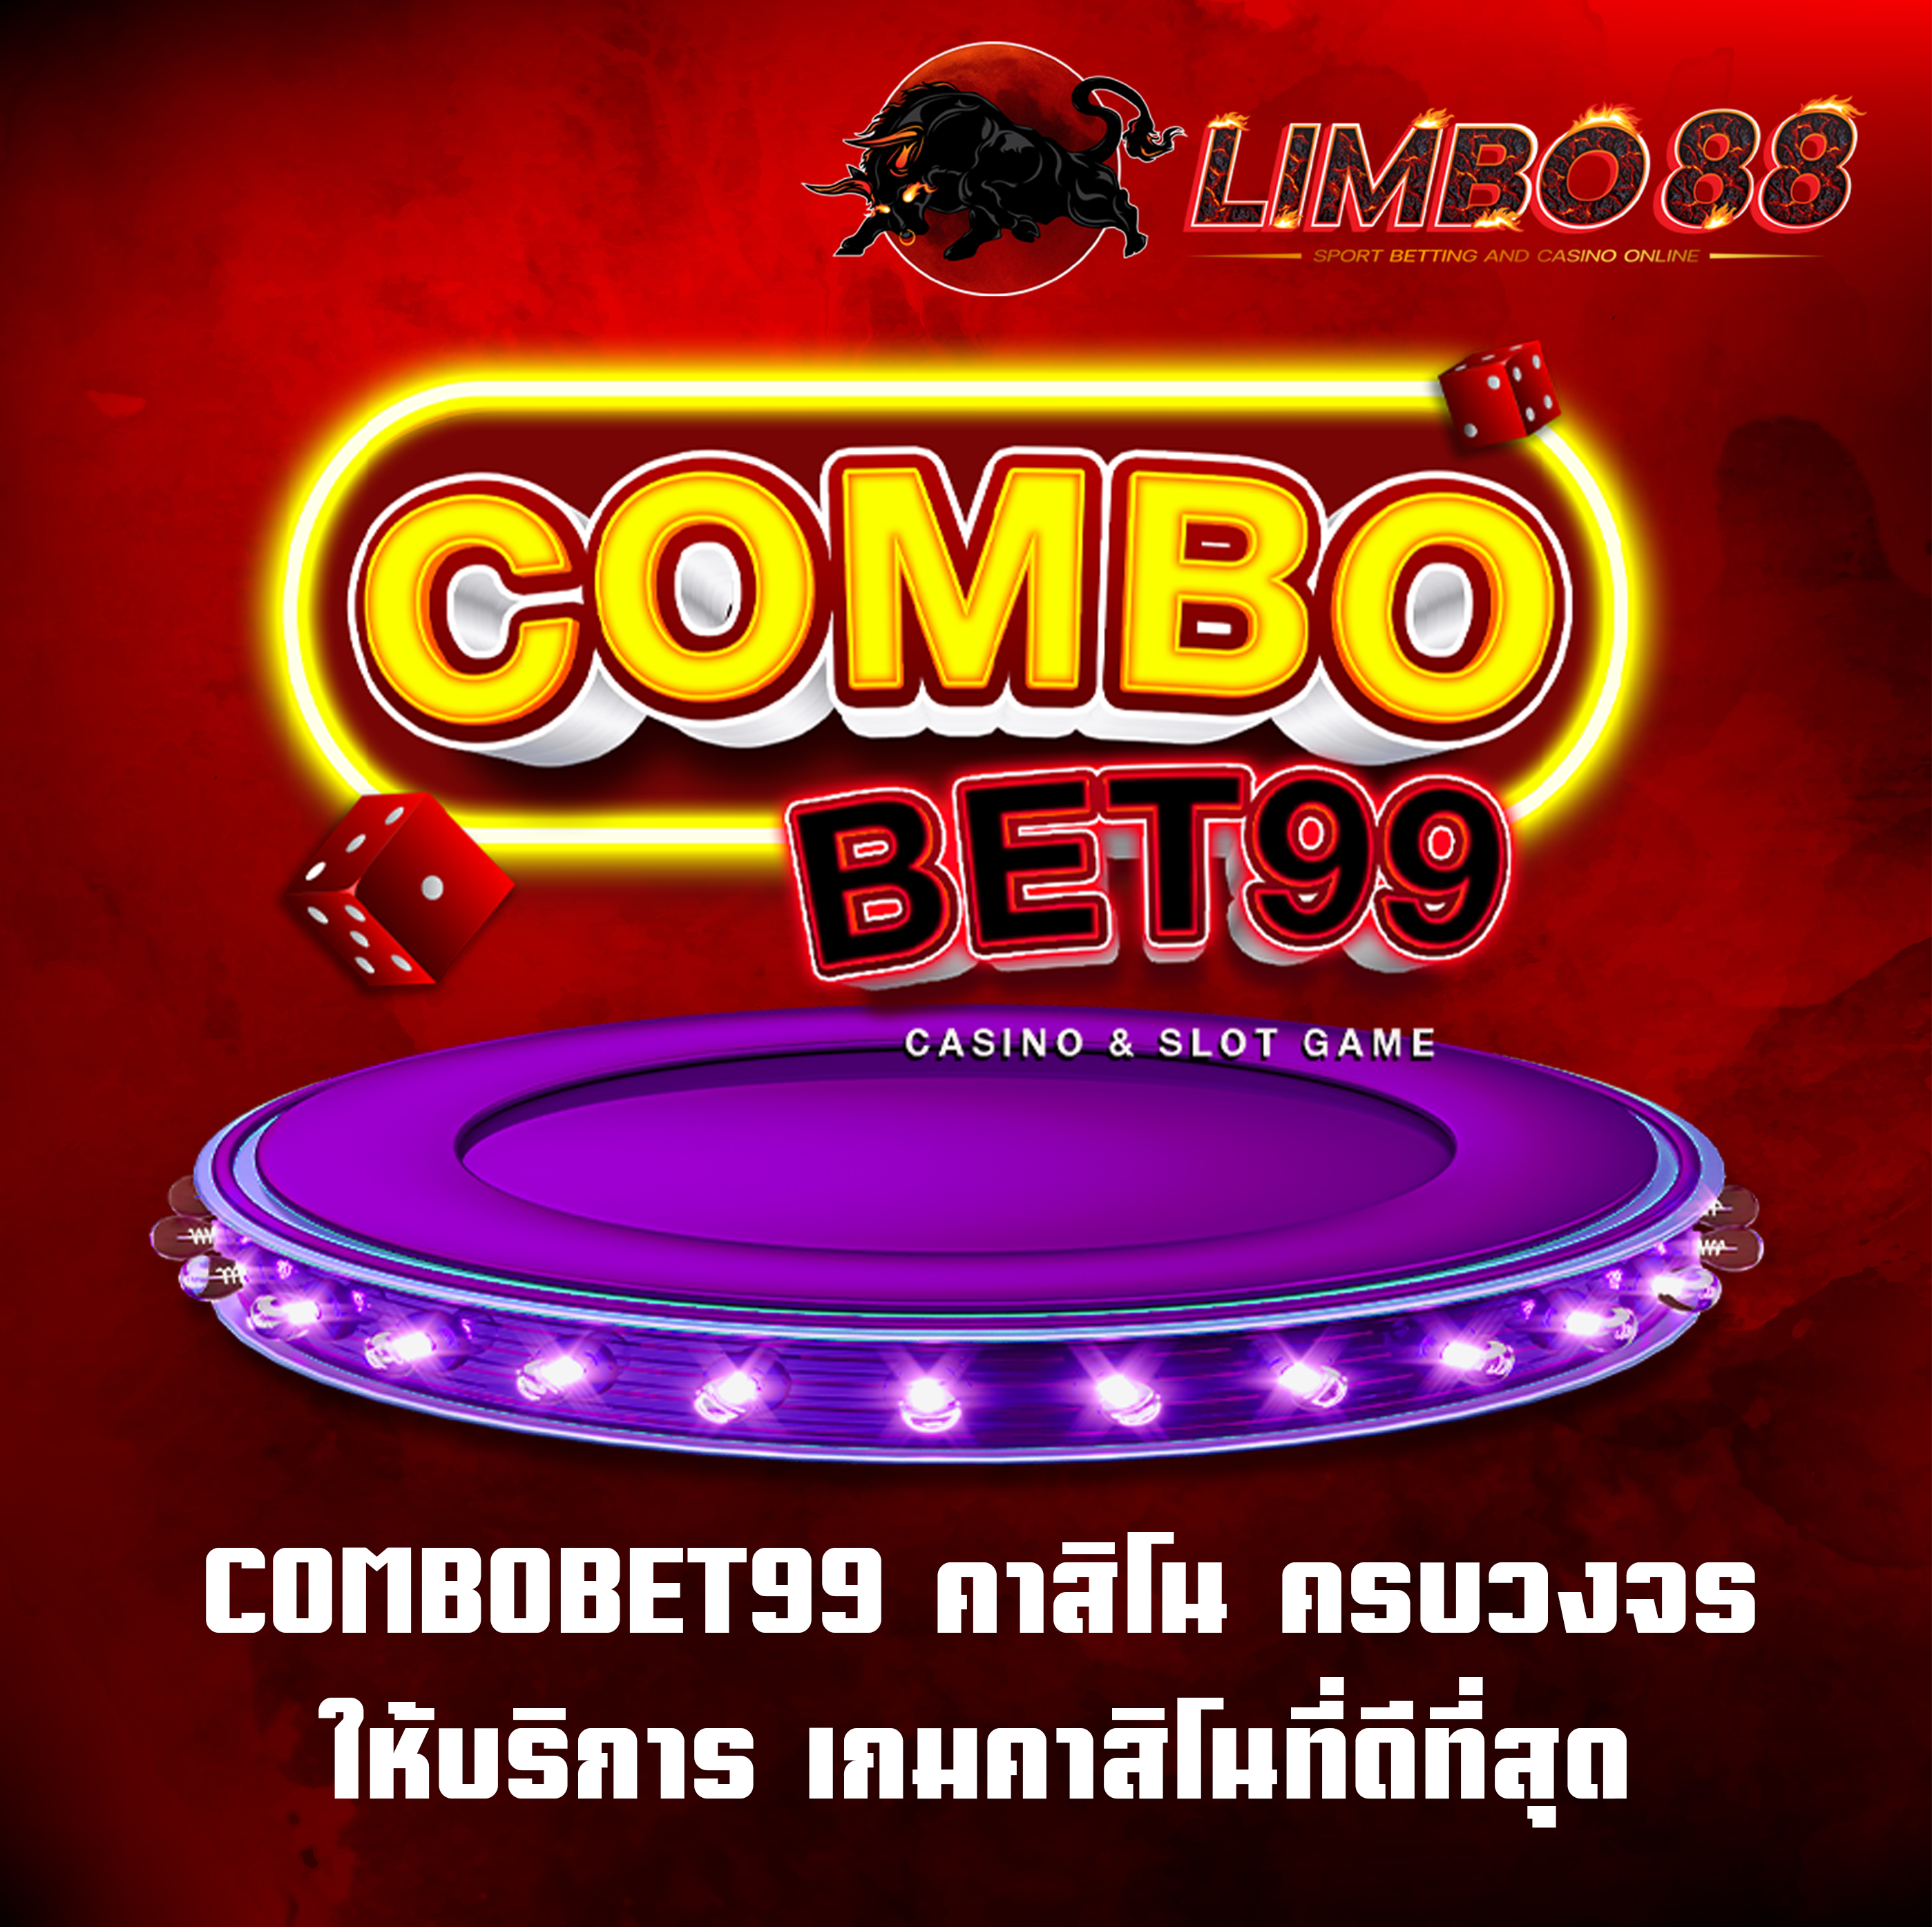 COMBOBET99